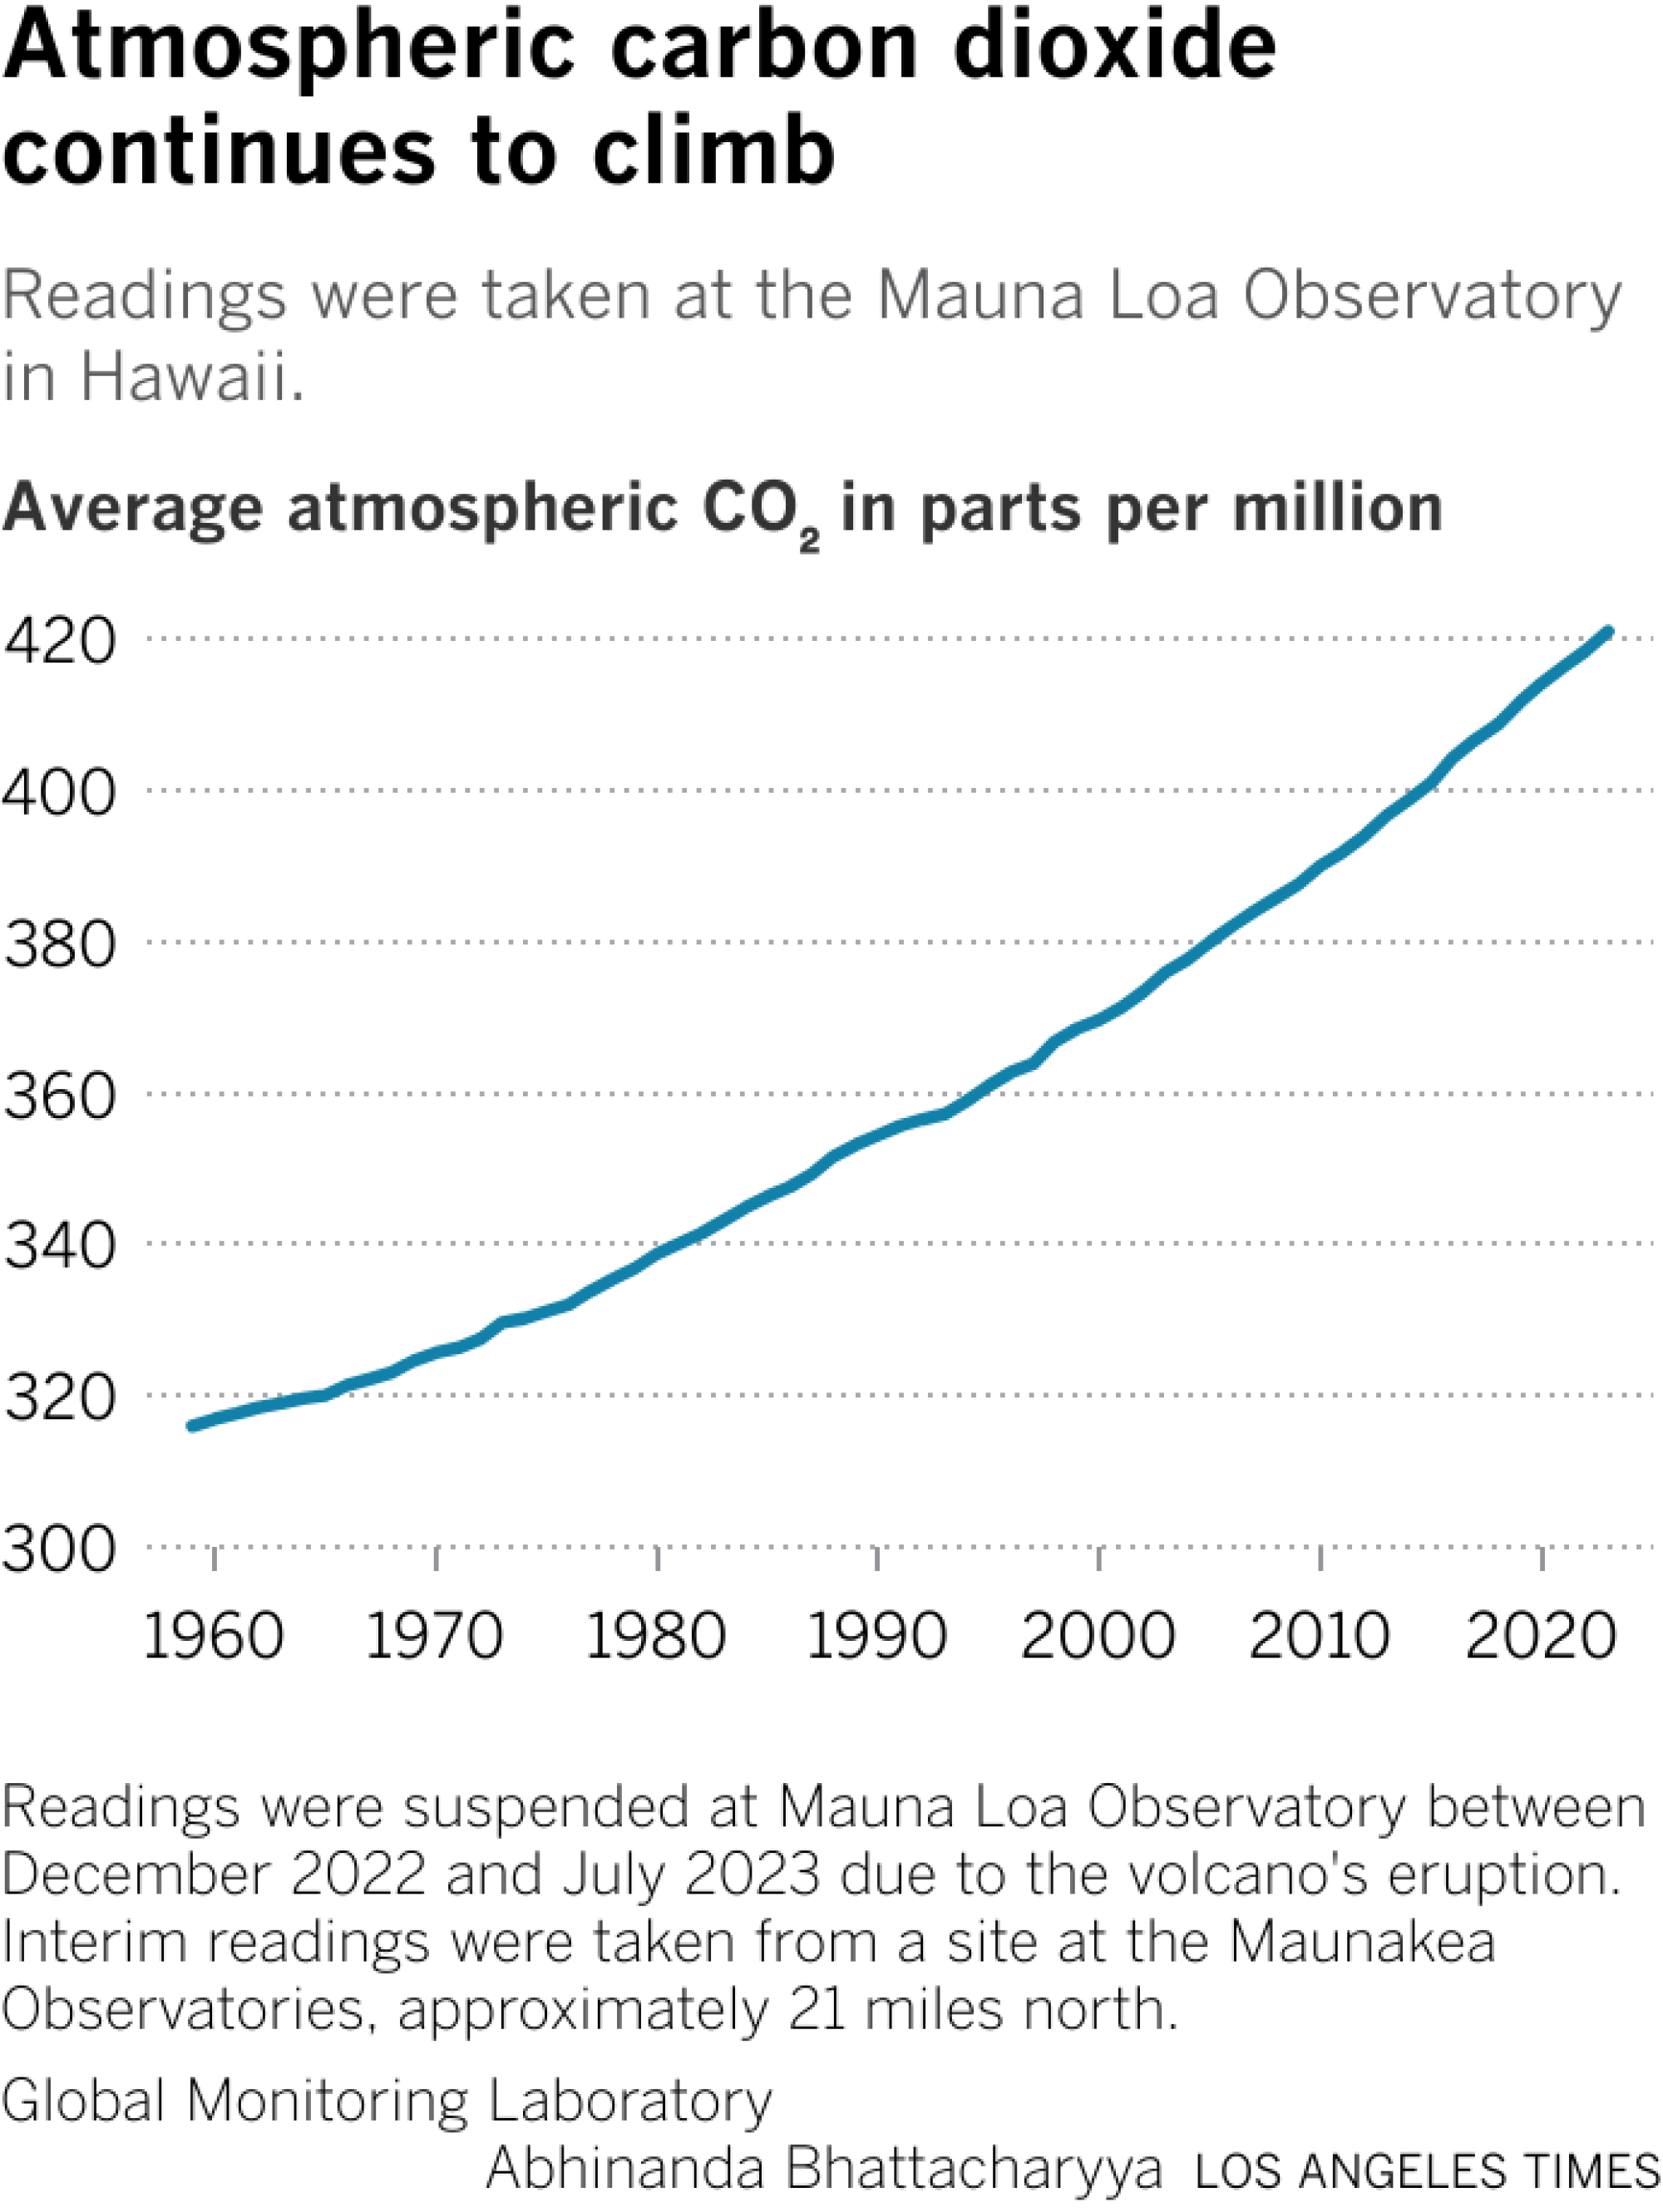 Um gráfico de linhas mostrando o aumento constante do dióxido de carbono atmosférico desde 1958.